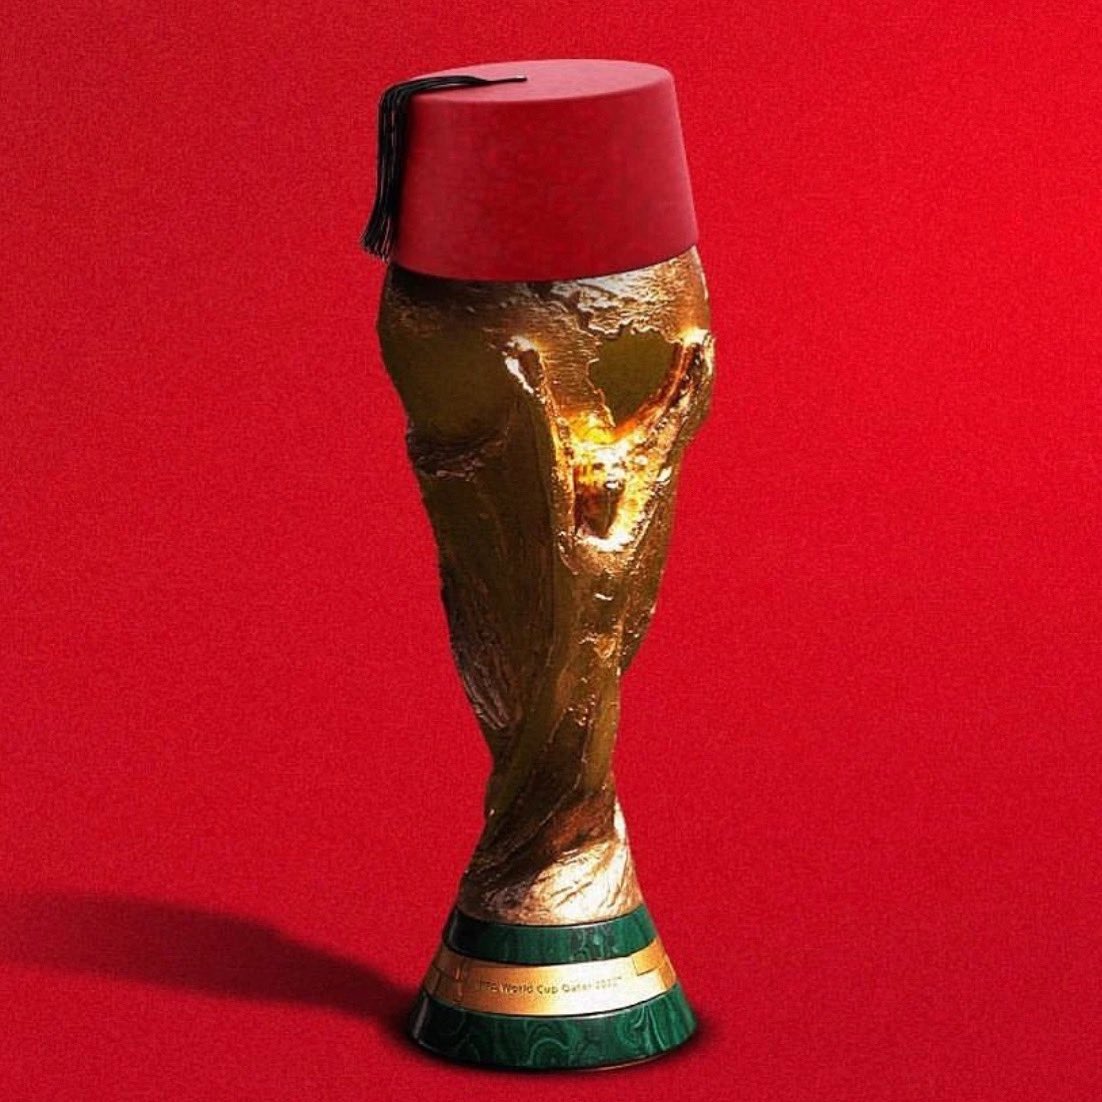 🚨 L'Arabie Saoudite 𝗥𝗘𝗧𝗜𝗥𝗘 sa candidature pour l'organisation de la Coupe du monde 2030 !

Le Royaume juge qu'il lui est 𝗜𝗠𝗣𝗢𝗦𝗦𝗜𝗕𝗟𝗘 de rivaliser face à la candidature du Maroc, Espagne et Portugal ! 🇲🇦🇪🇸🇵🇹